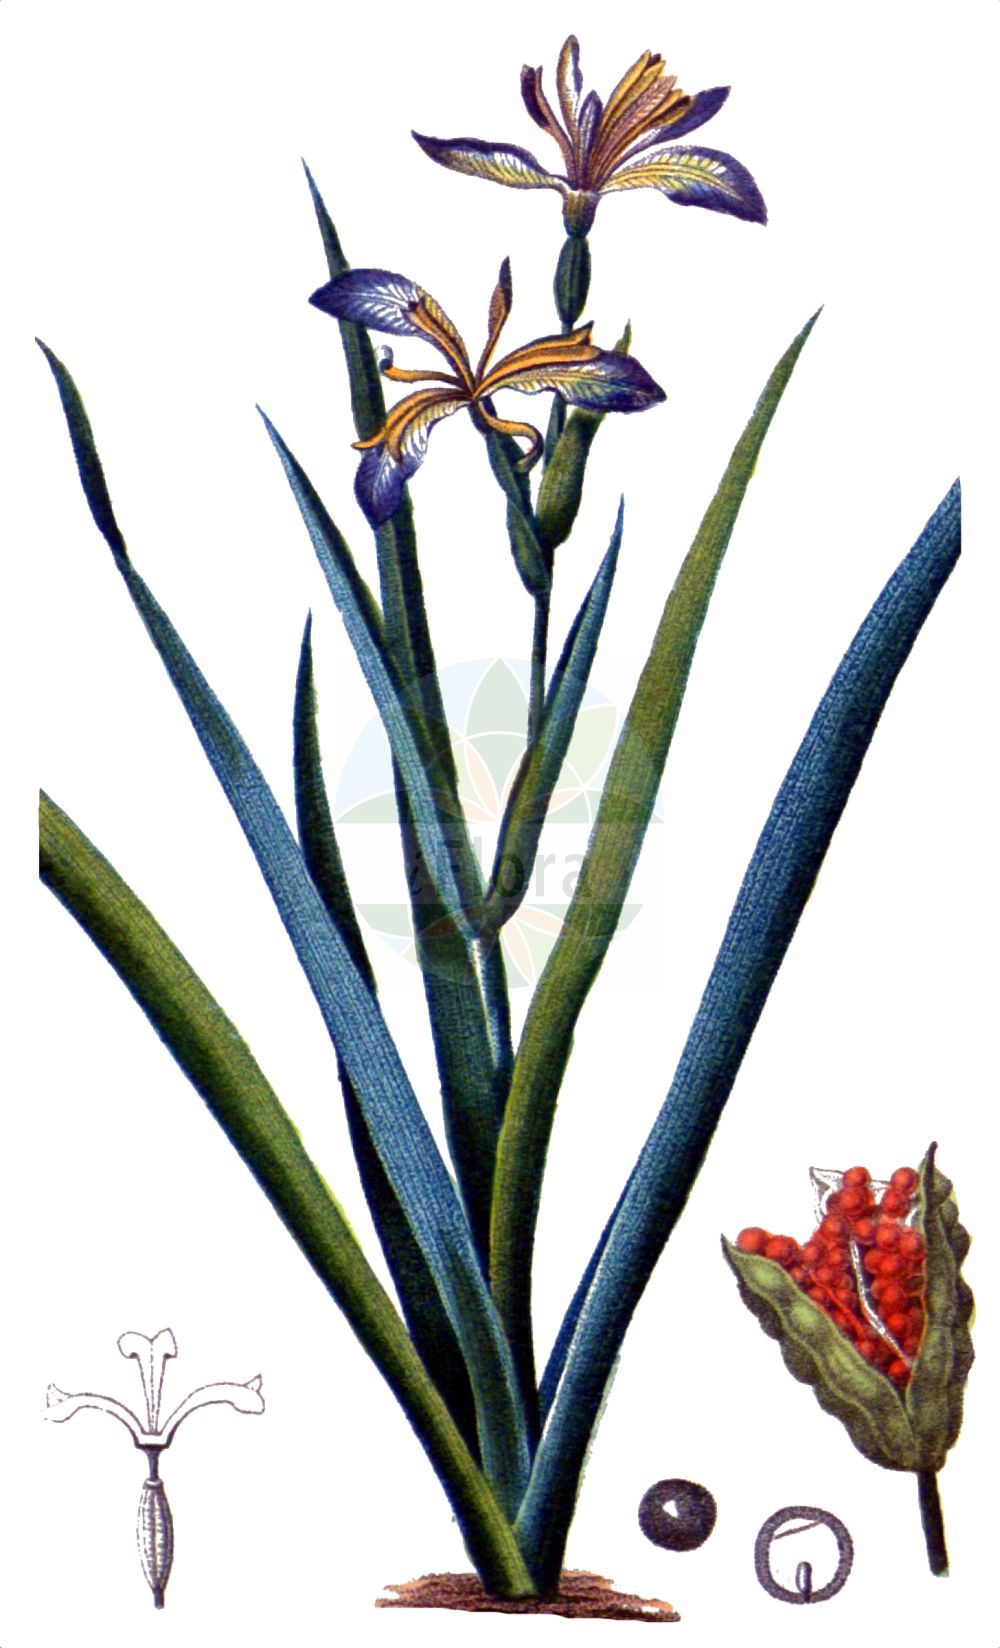 Historische Abbildung von Iris foetidissima (Stinking Iris). Das Bild zeigt Blatt, Bluete, Frucht und Same. ---- Historical Drawing of Iris foetidissima (Stinking Iris). The image is showing leaf, flower, fruit and seed.(Iris foetidissima,Stinking Iris,Chamaeiris foetida,Iris foetida,Iris foetidissima,Spathula foetidissima,Xiphion foetidissimum,Xyridion foetidissimum,Iris,Schwertlilie,Iris,Iridaceae,Schwertliliengewächse,Iris family,Blatt,Bluete,Frucht,Same,leaf,flower,fruit,seed,Chaumeton (1814f))